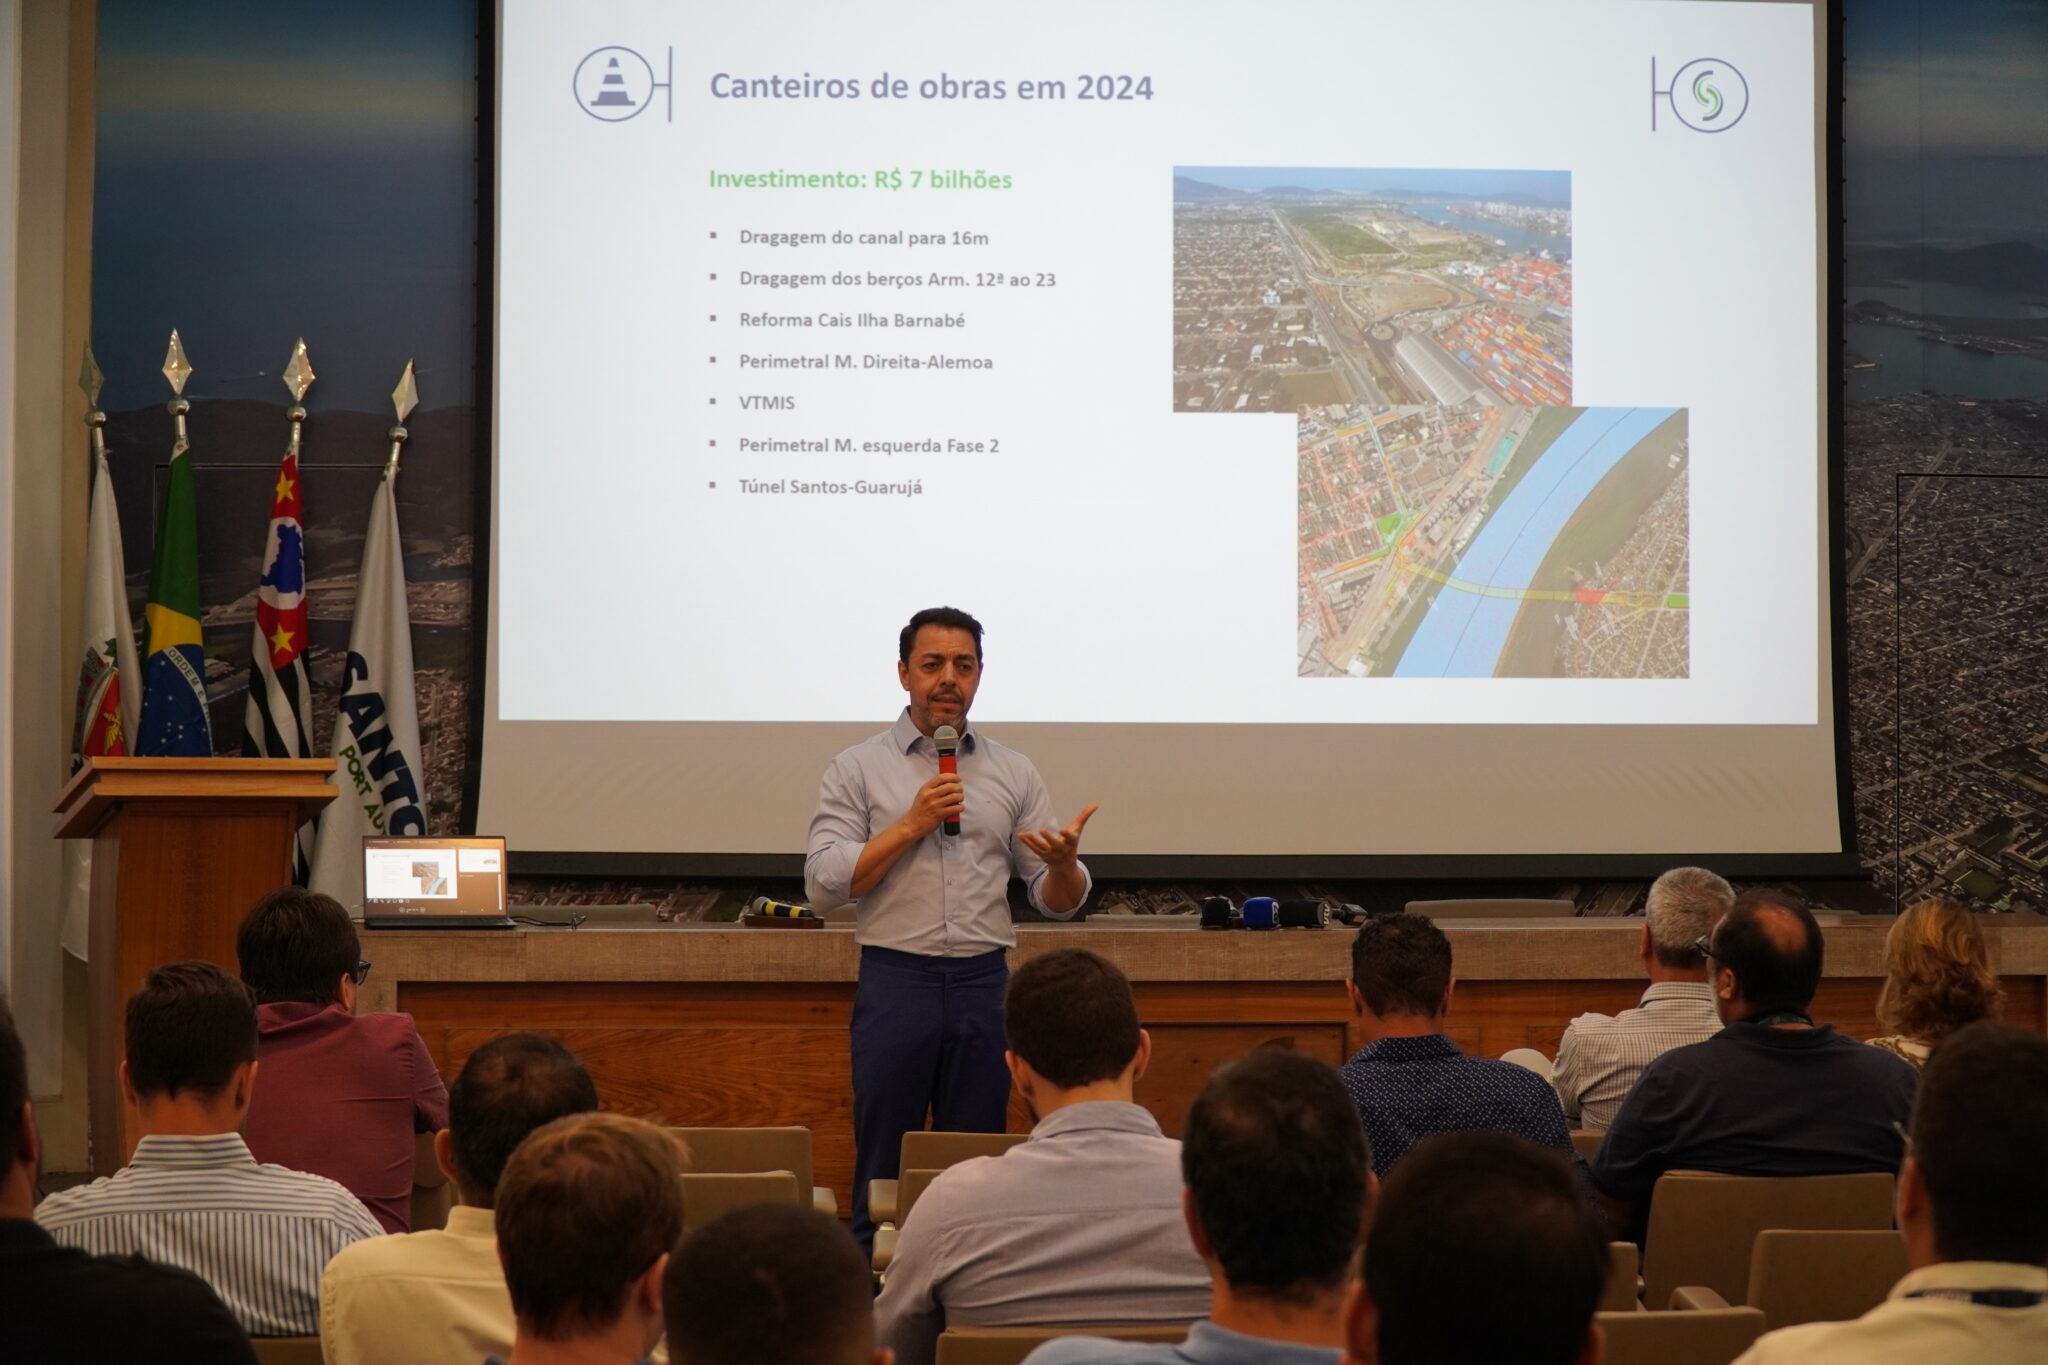 Porto de Santos programa investimento de R$ 7 bilhões em obras